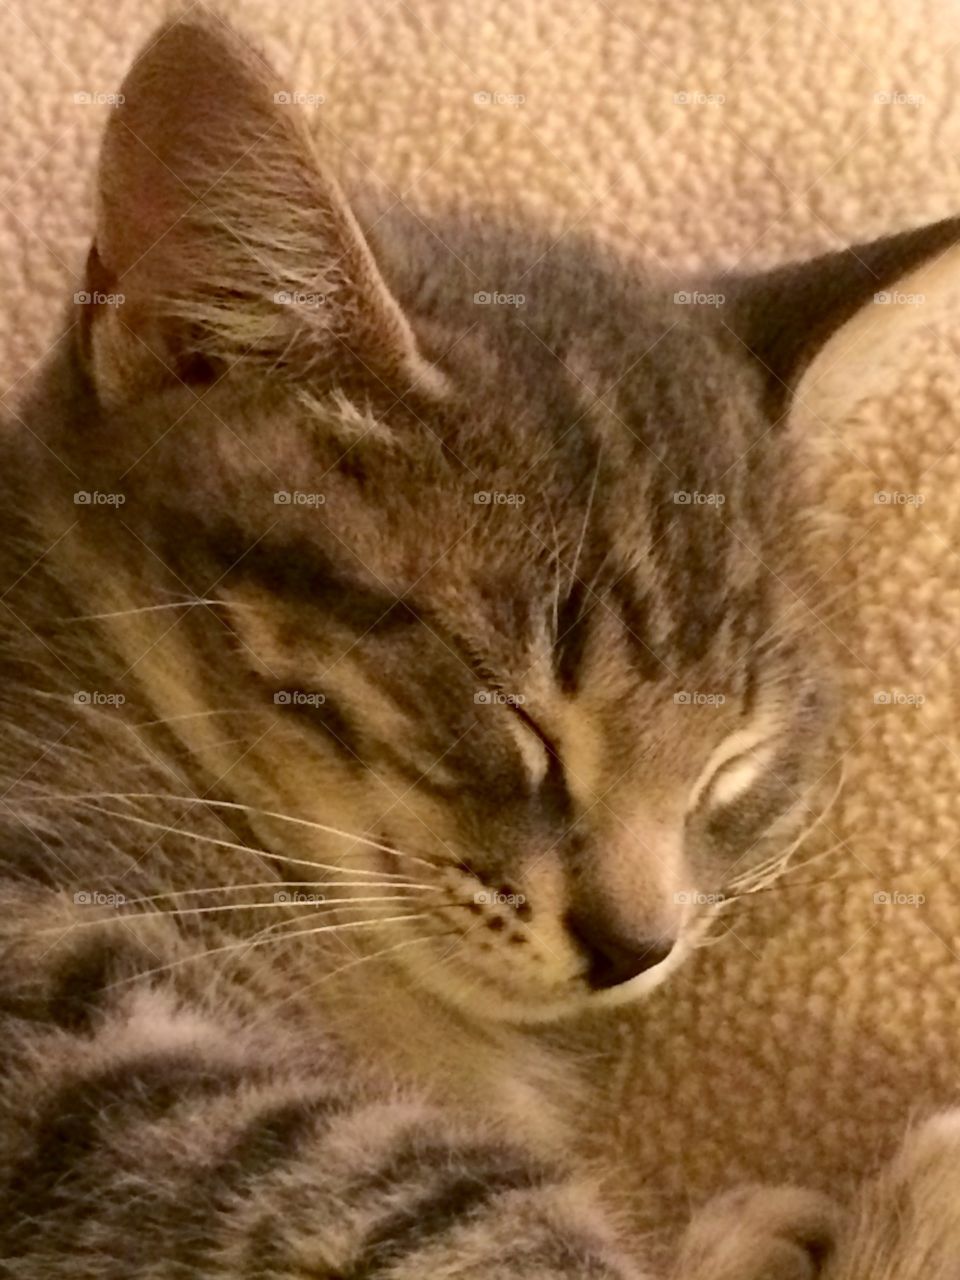 Sleepy Kitty
